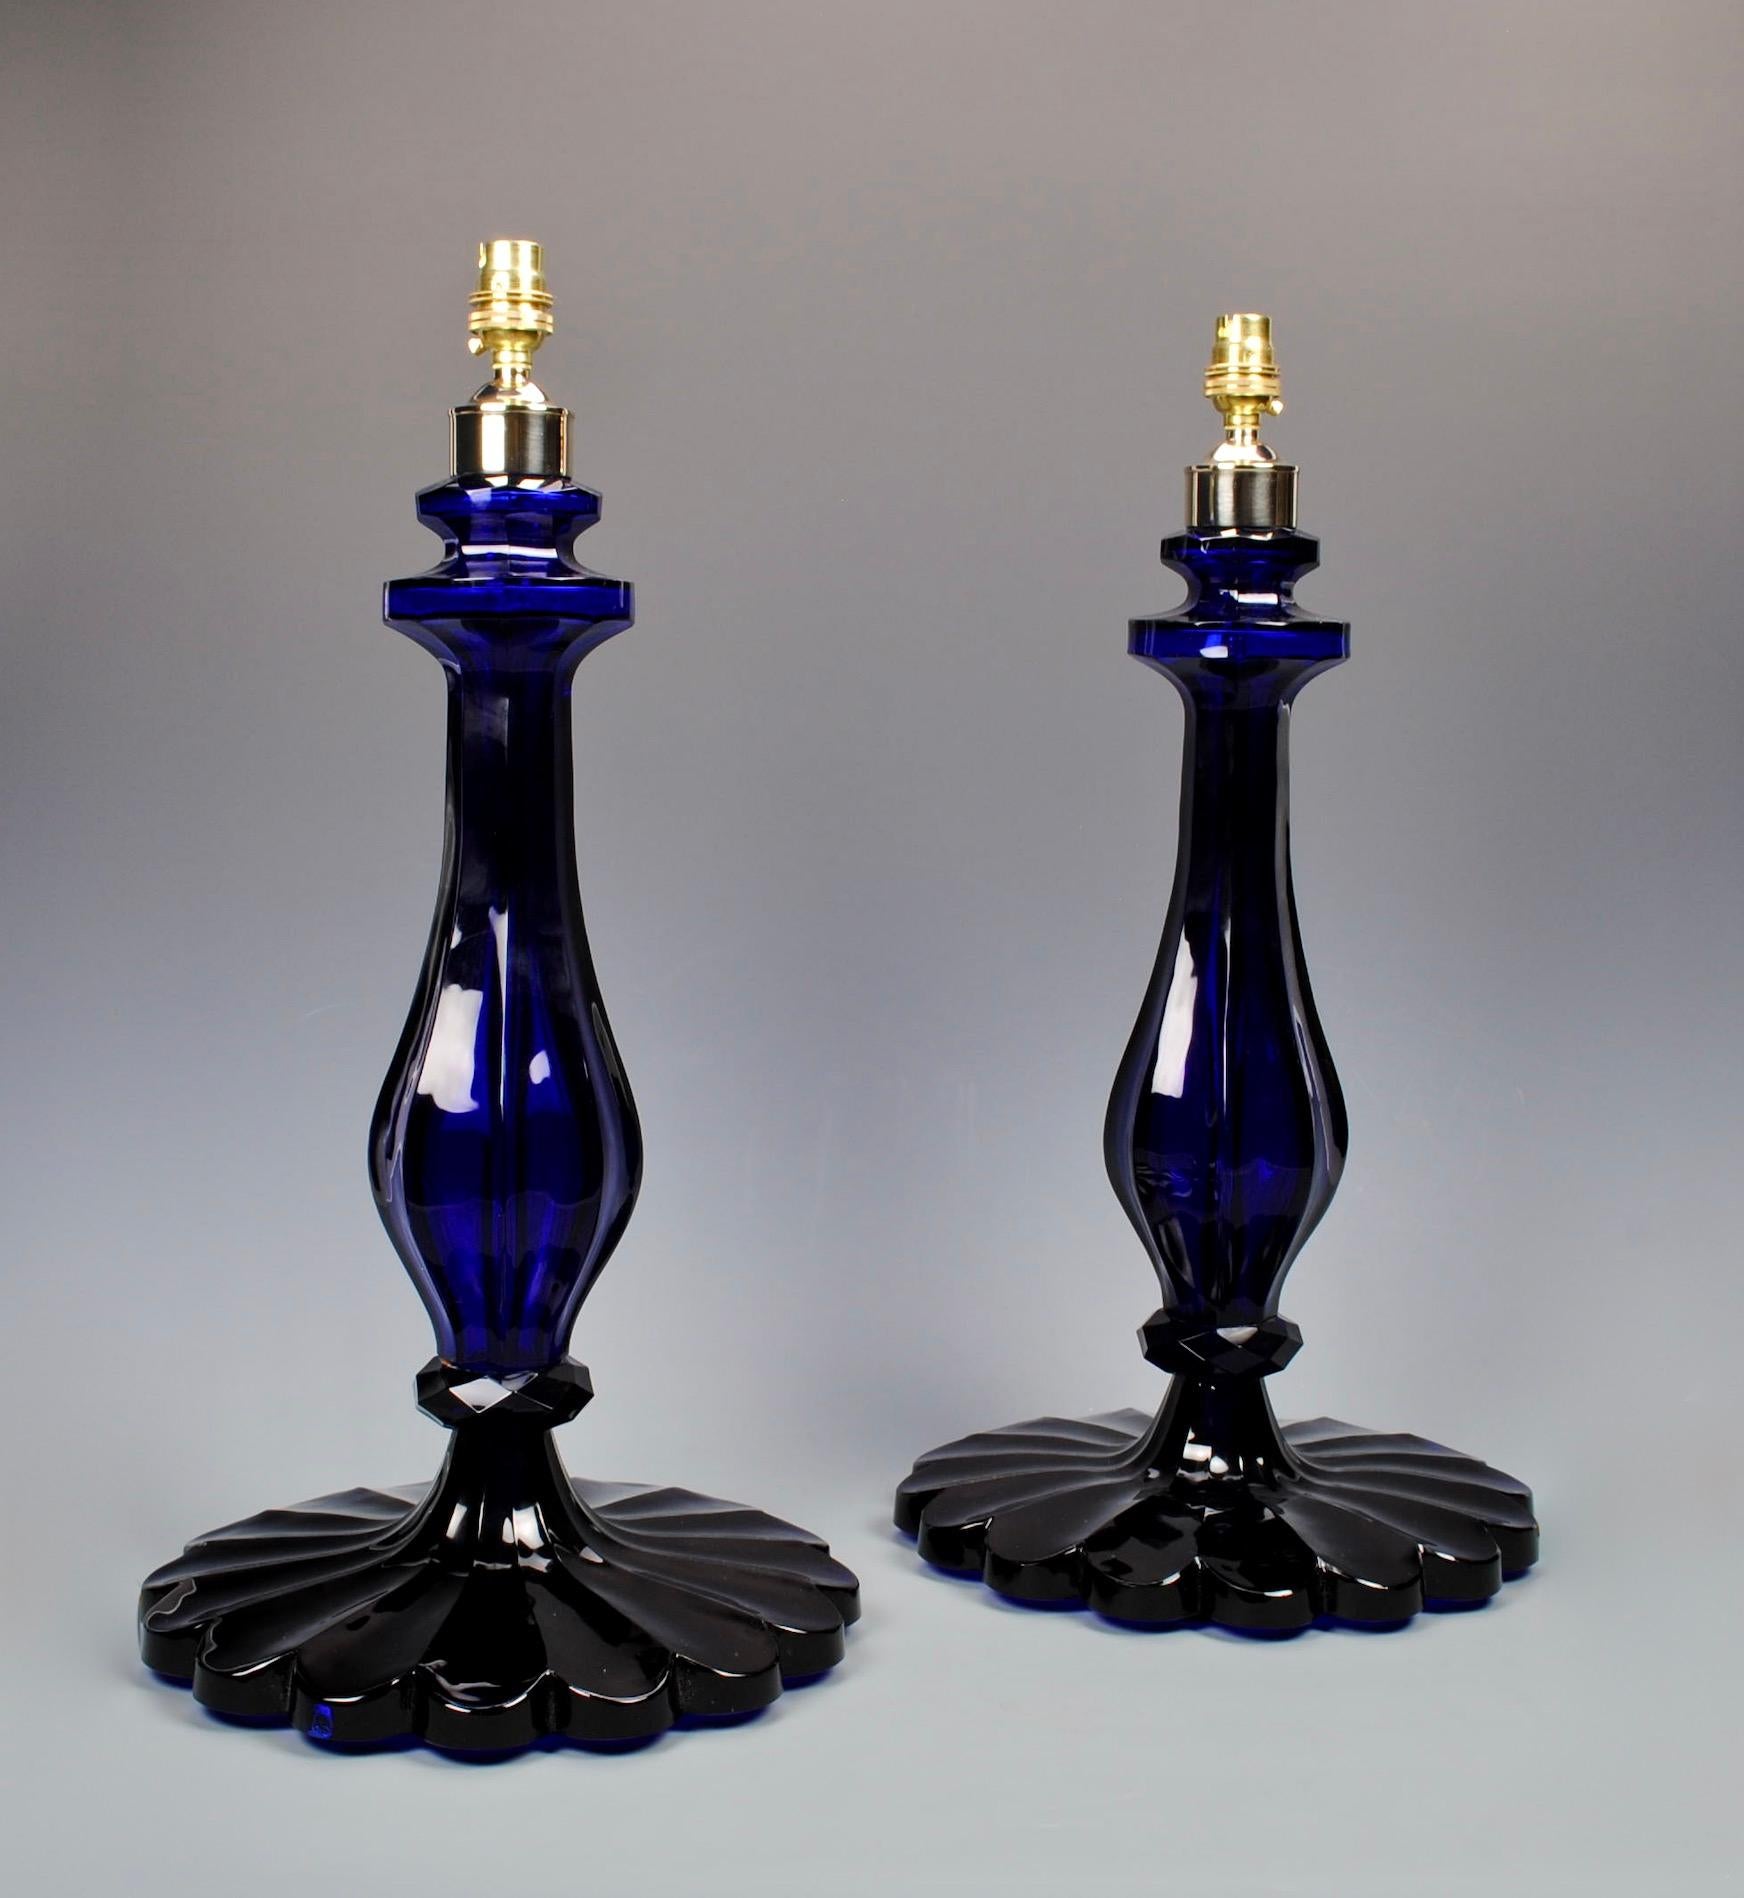 Ein hervorragendes Paar kobaltblauer Tischlampen aus geschliffenem Glas, jede mit geformten, facettierten Balusterstäben und gewelltem Sockel.

Höhe: 48,5 cm (19 Zoll) ohne elektrische Vorrichtungen und Lampenschirme.

Alle unsere Lampen können